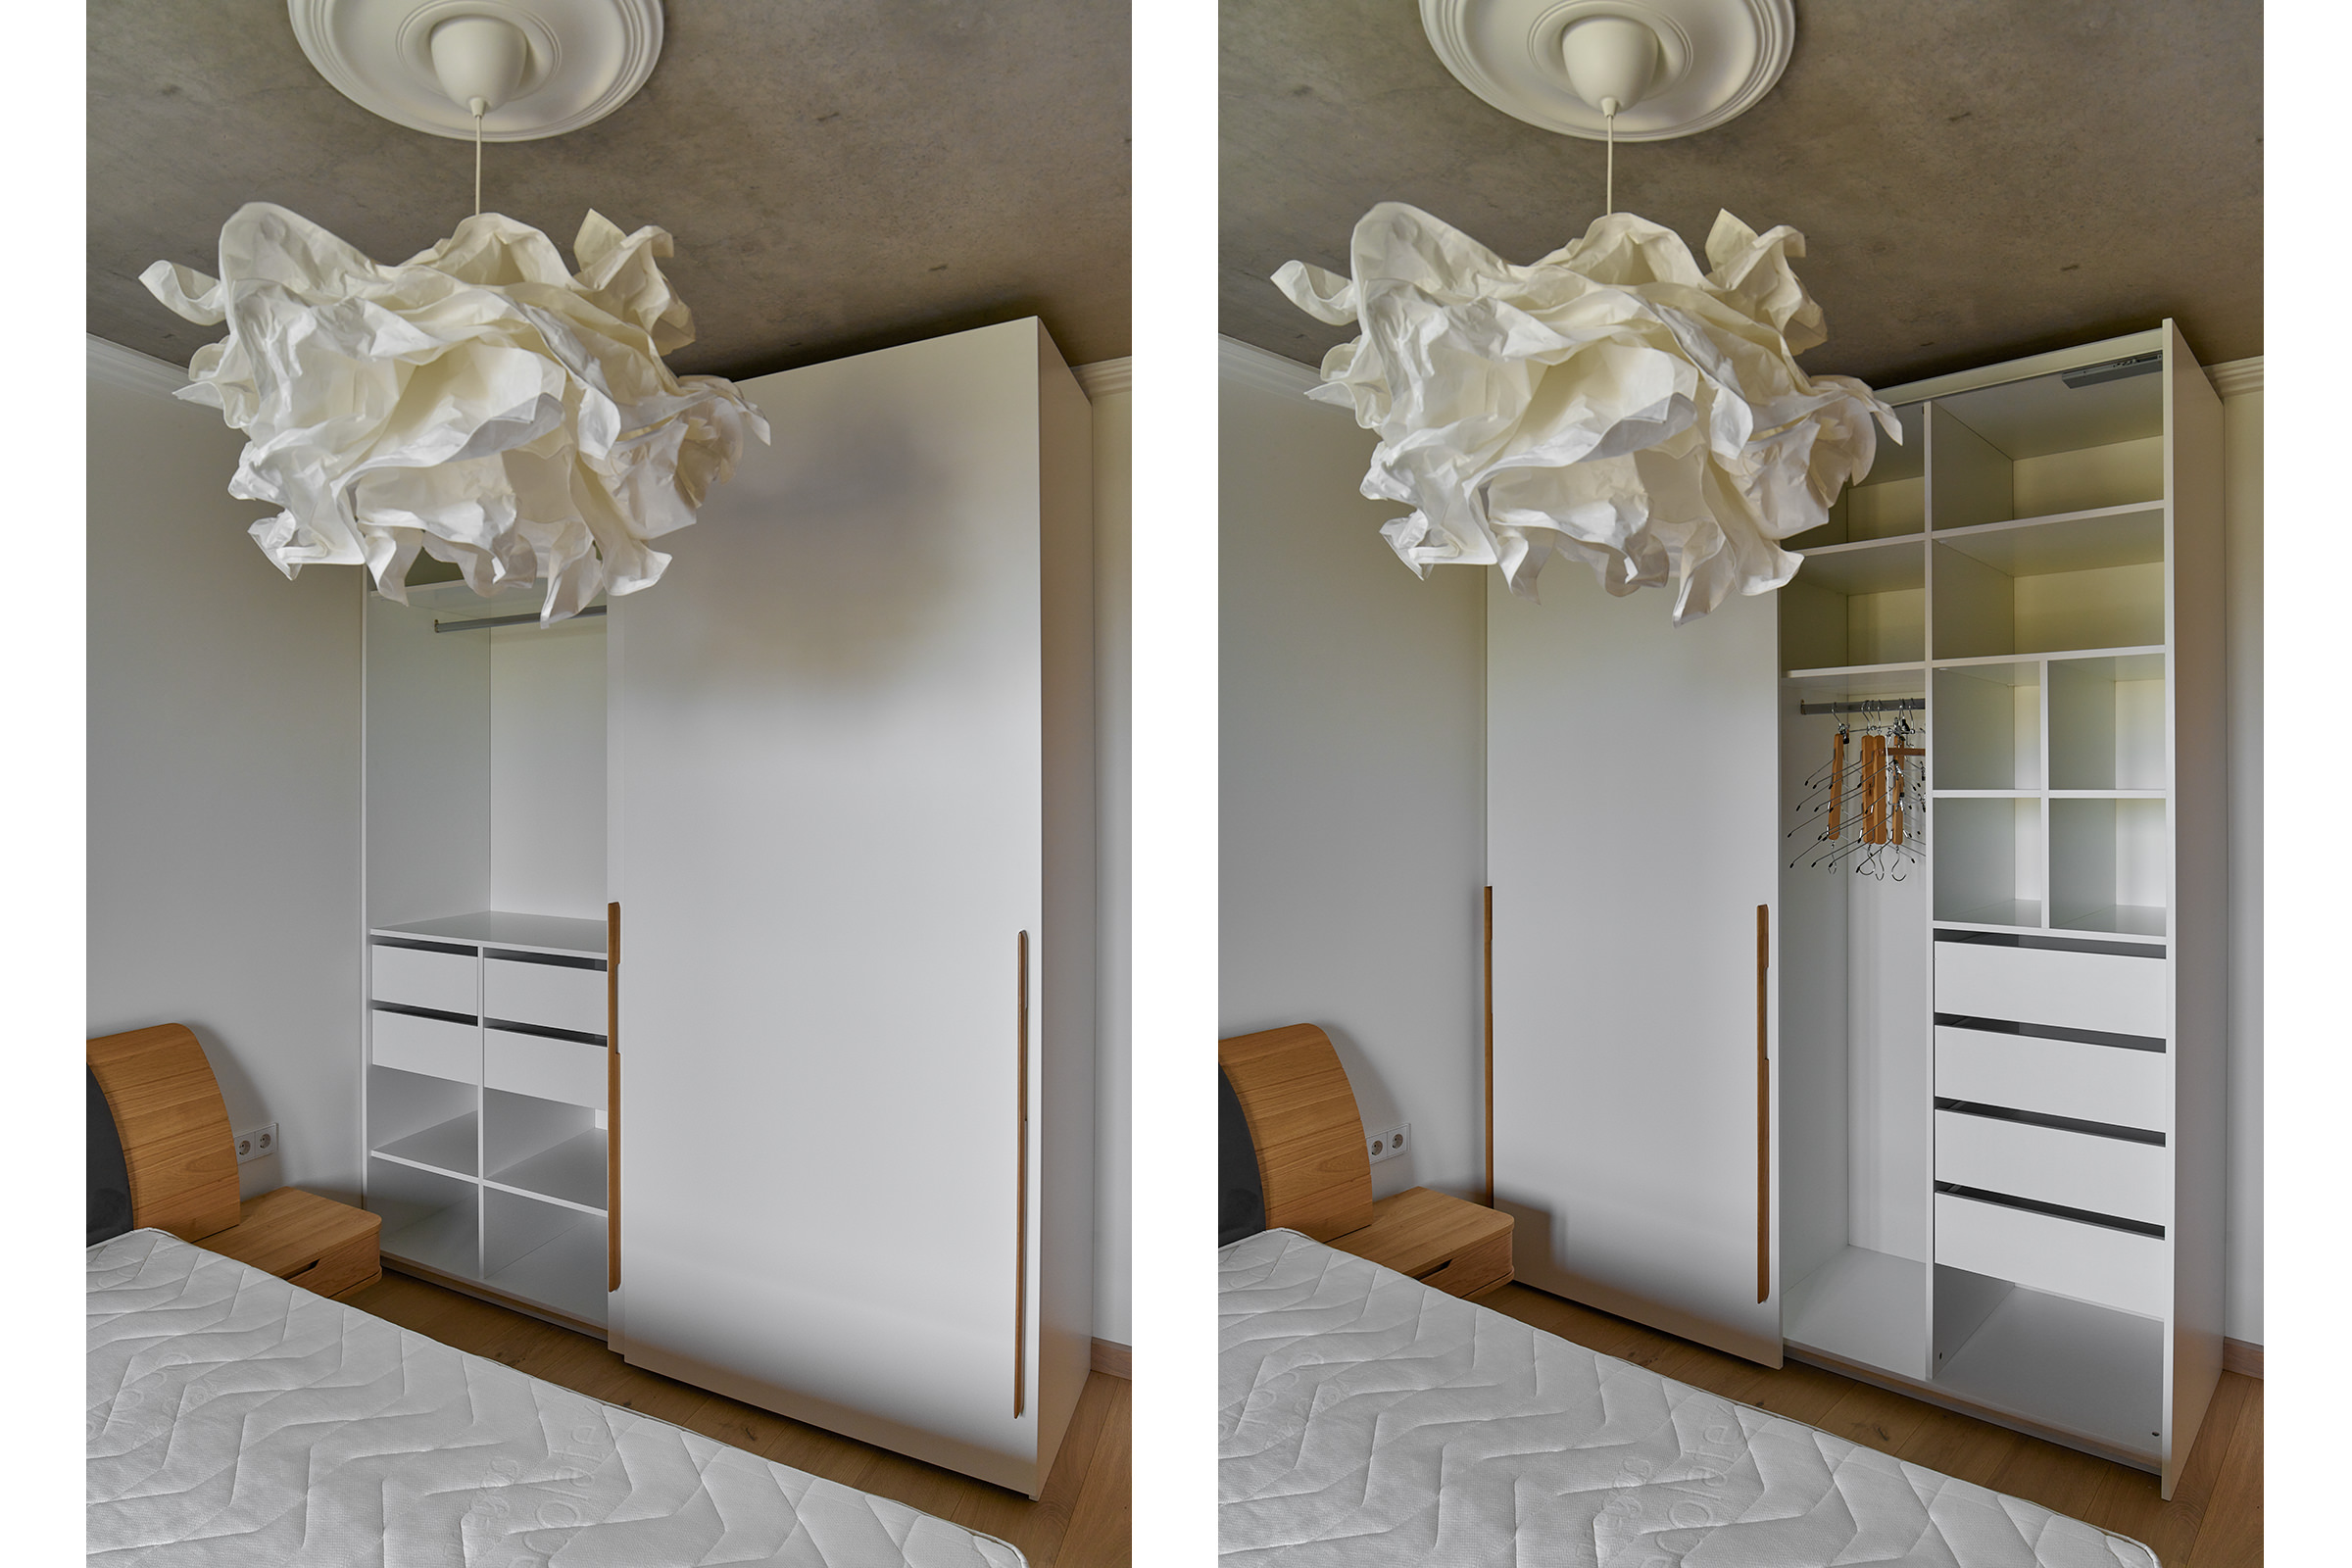 Мебельная фотосъёмка двухстворчатого шкафа для одежды со слайдерными дверями в открытом виде в интерьере современной спальни с бетонными потолками, белыми стенами и бумажным светильником IKEA в форме облака